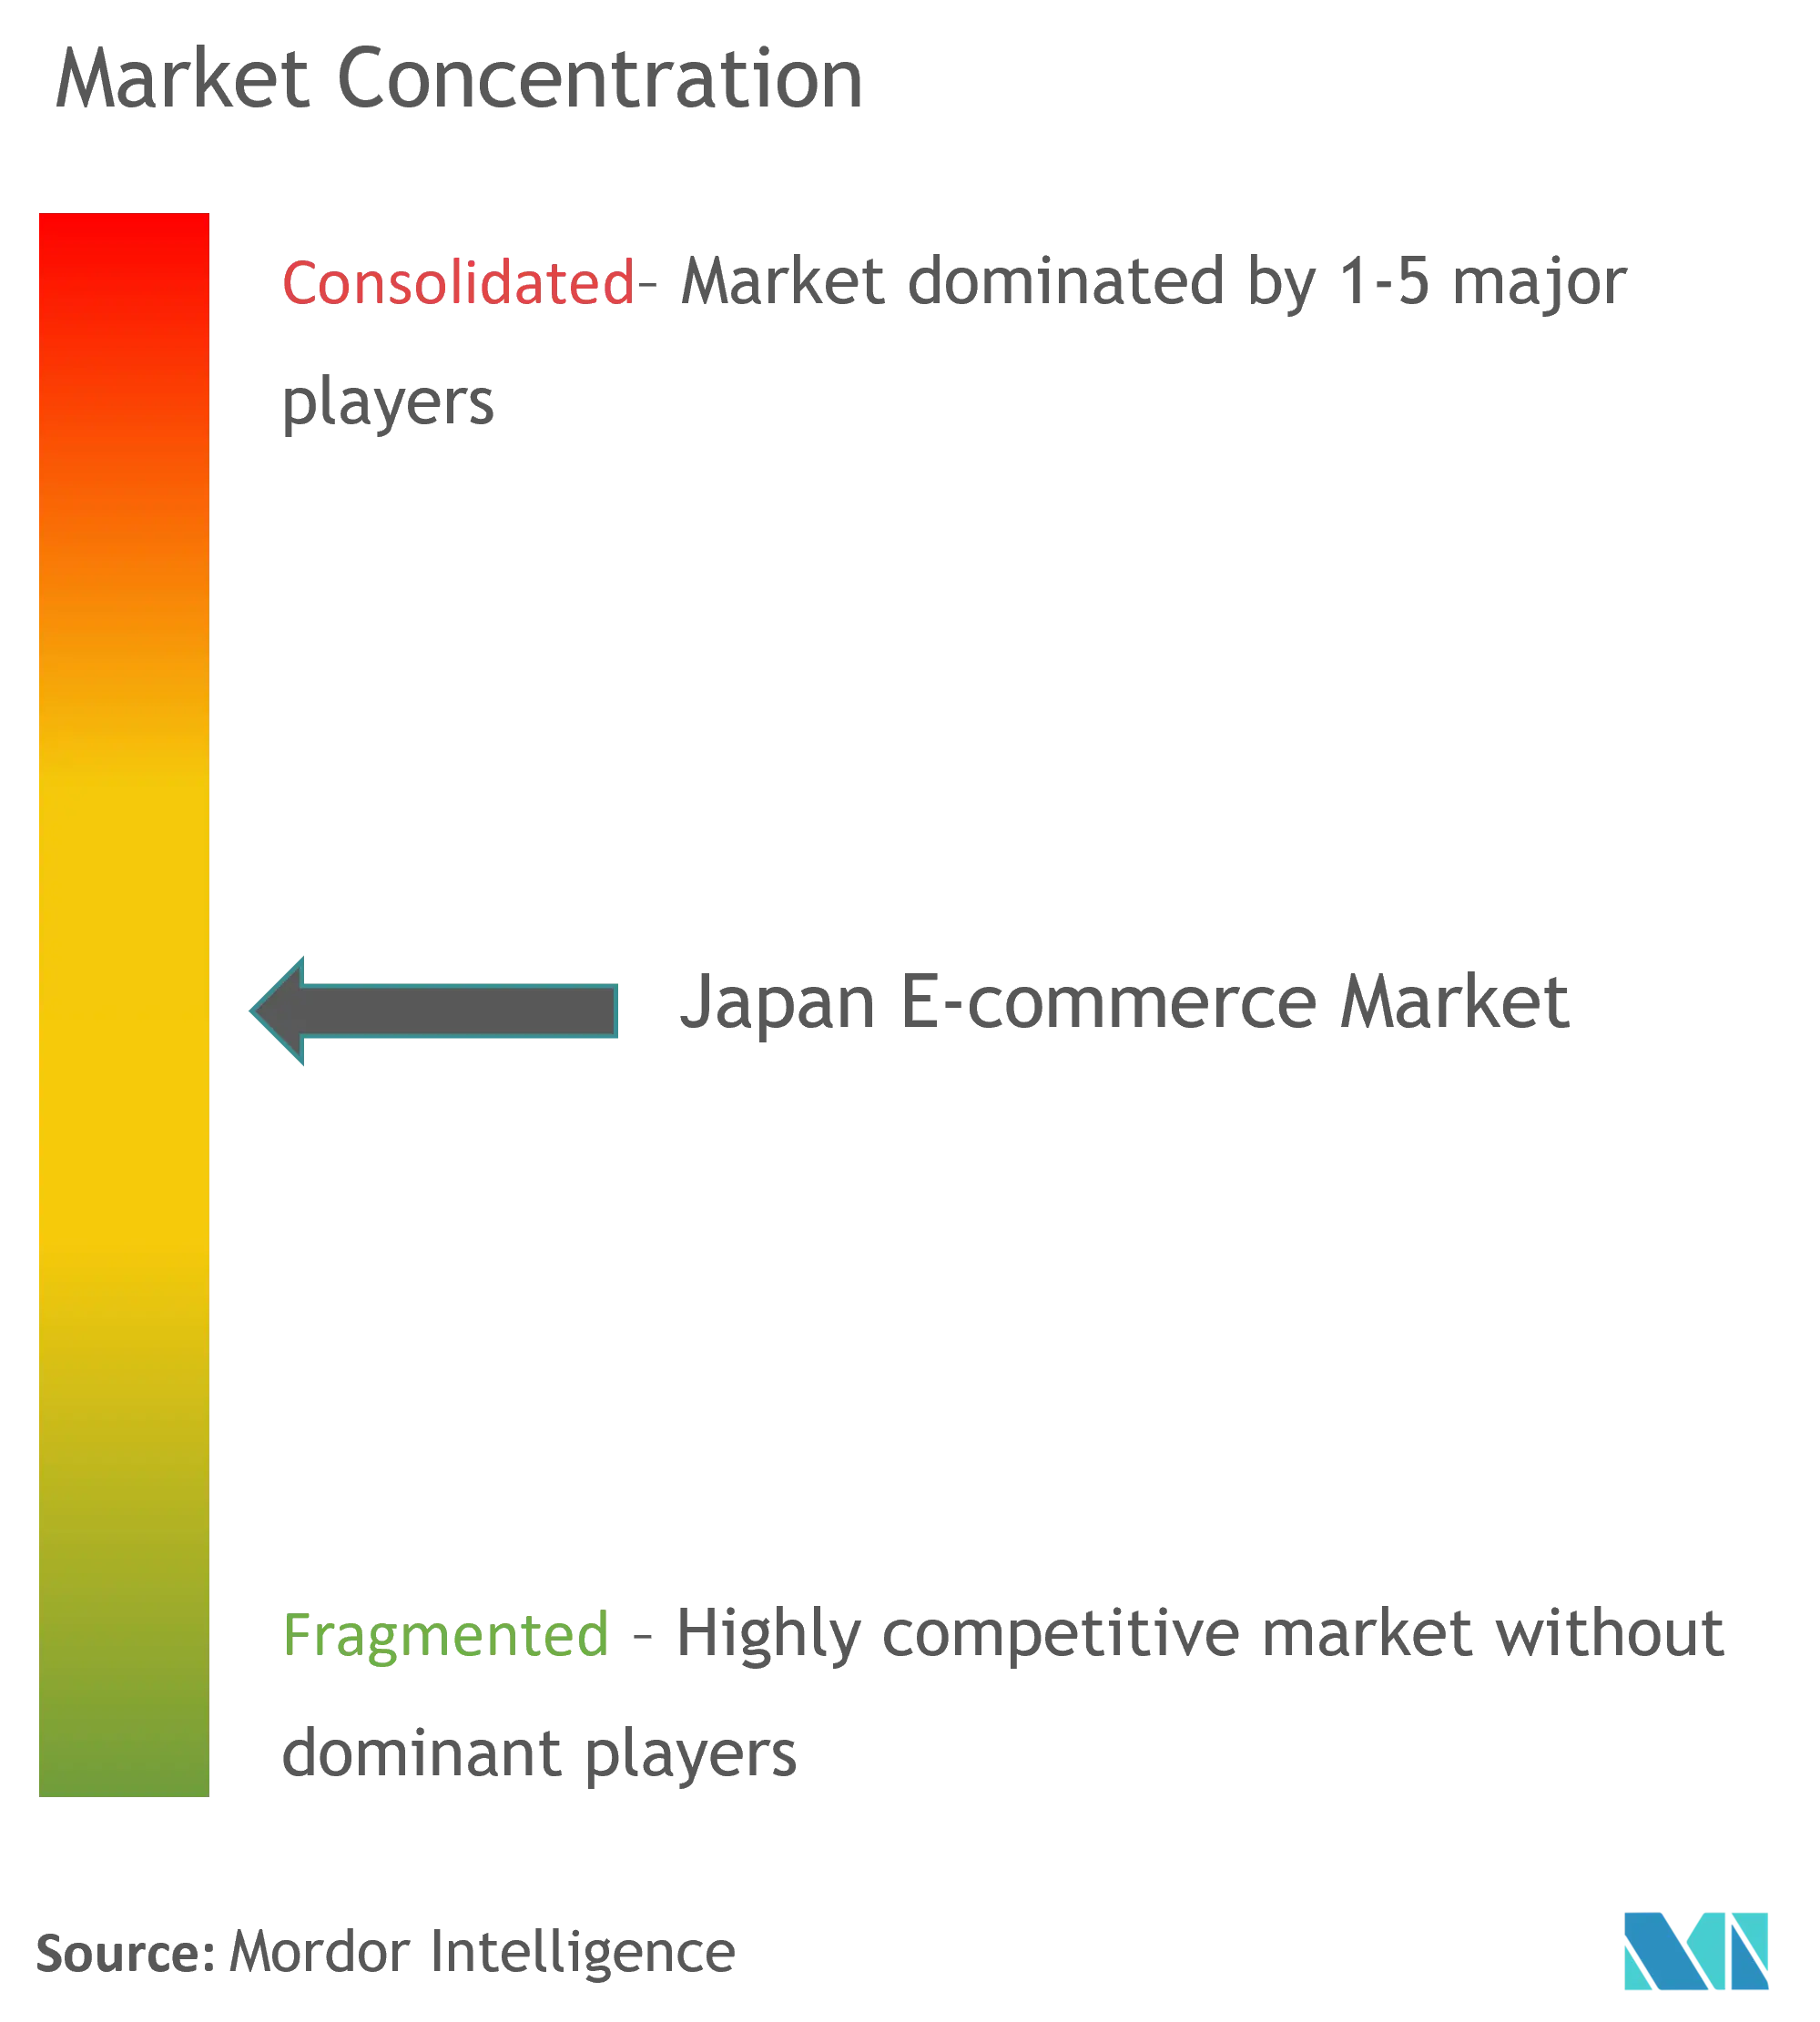 Japan E-Commerce Market Concentration